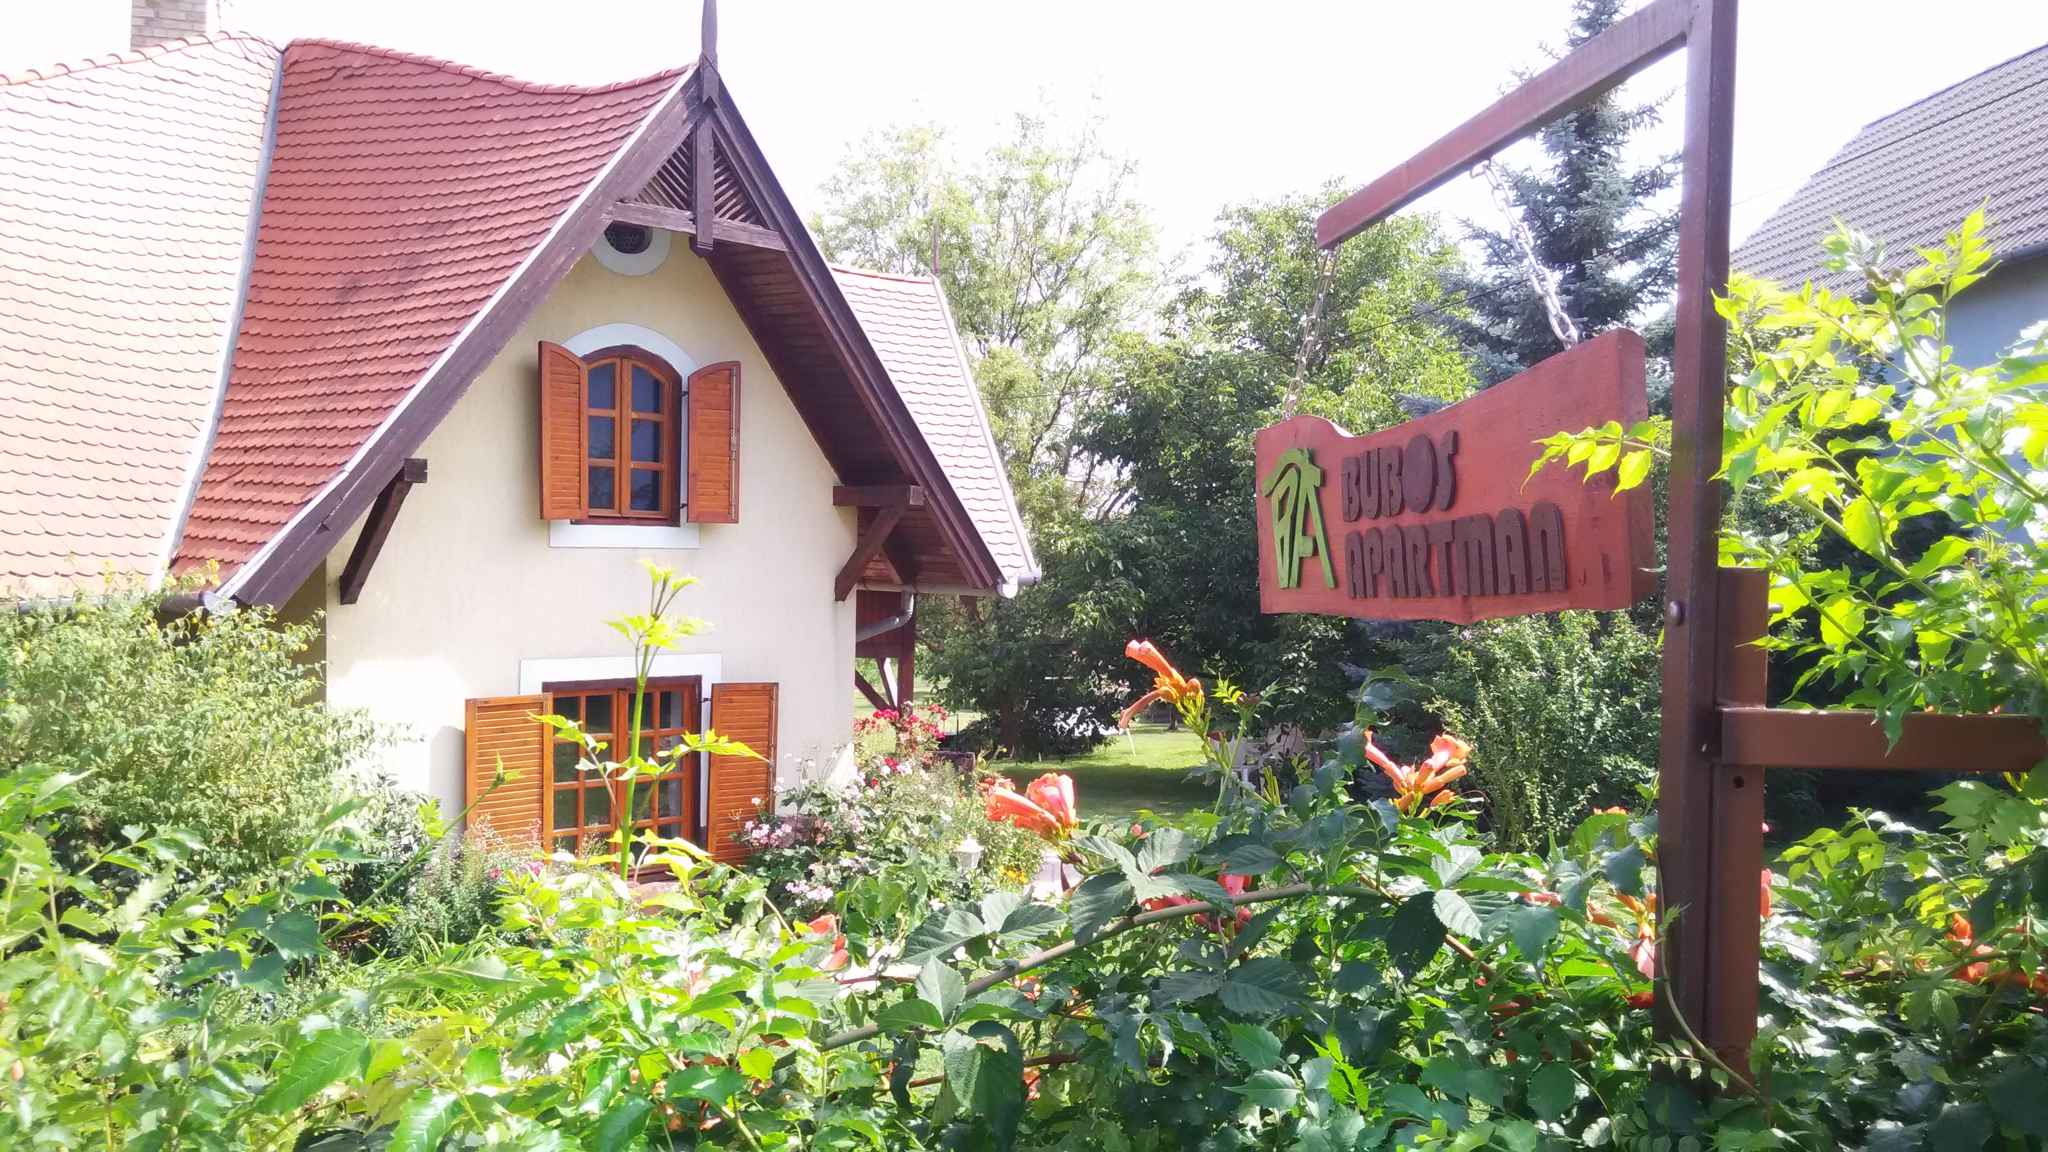 Ferienhaus mit riesengroßem Grundstück  Ferienhaus in Ungarn